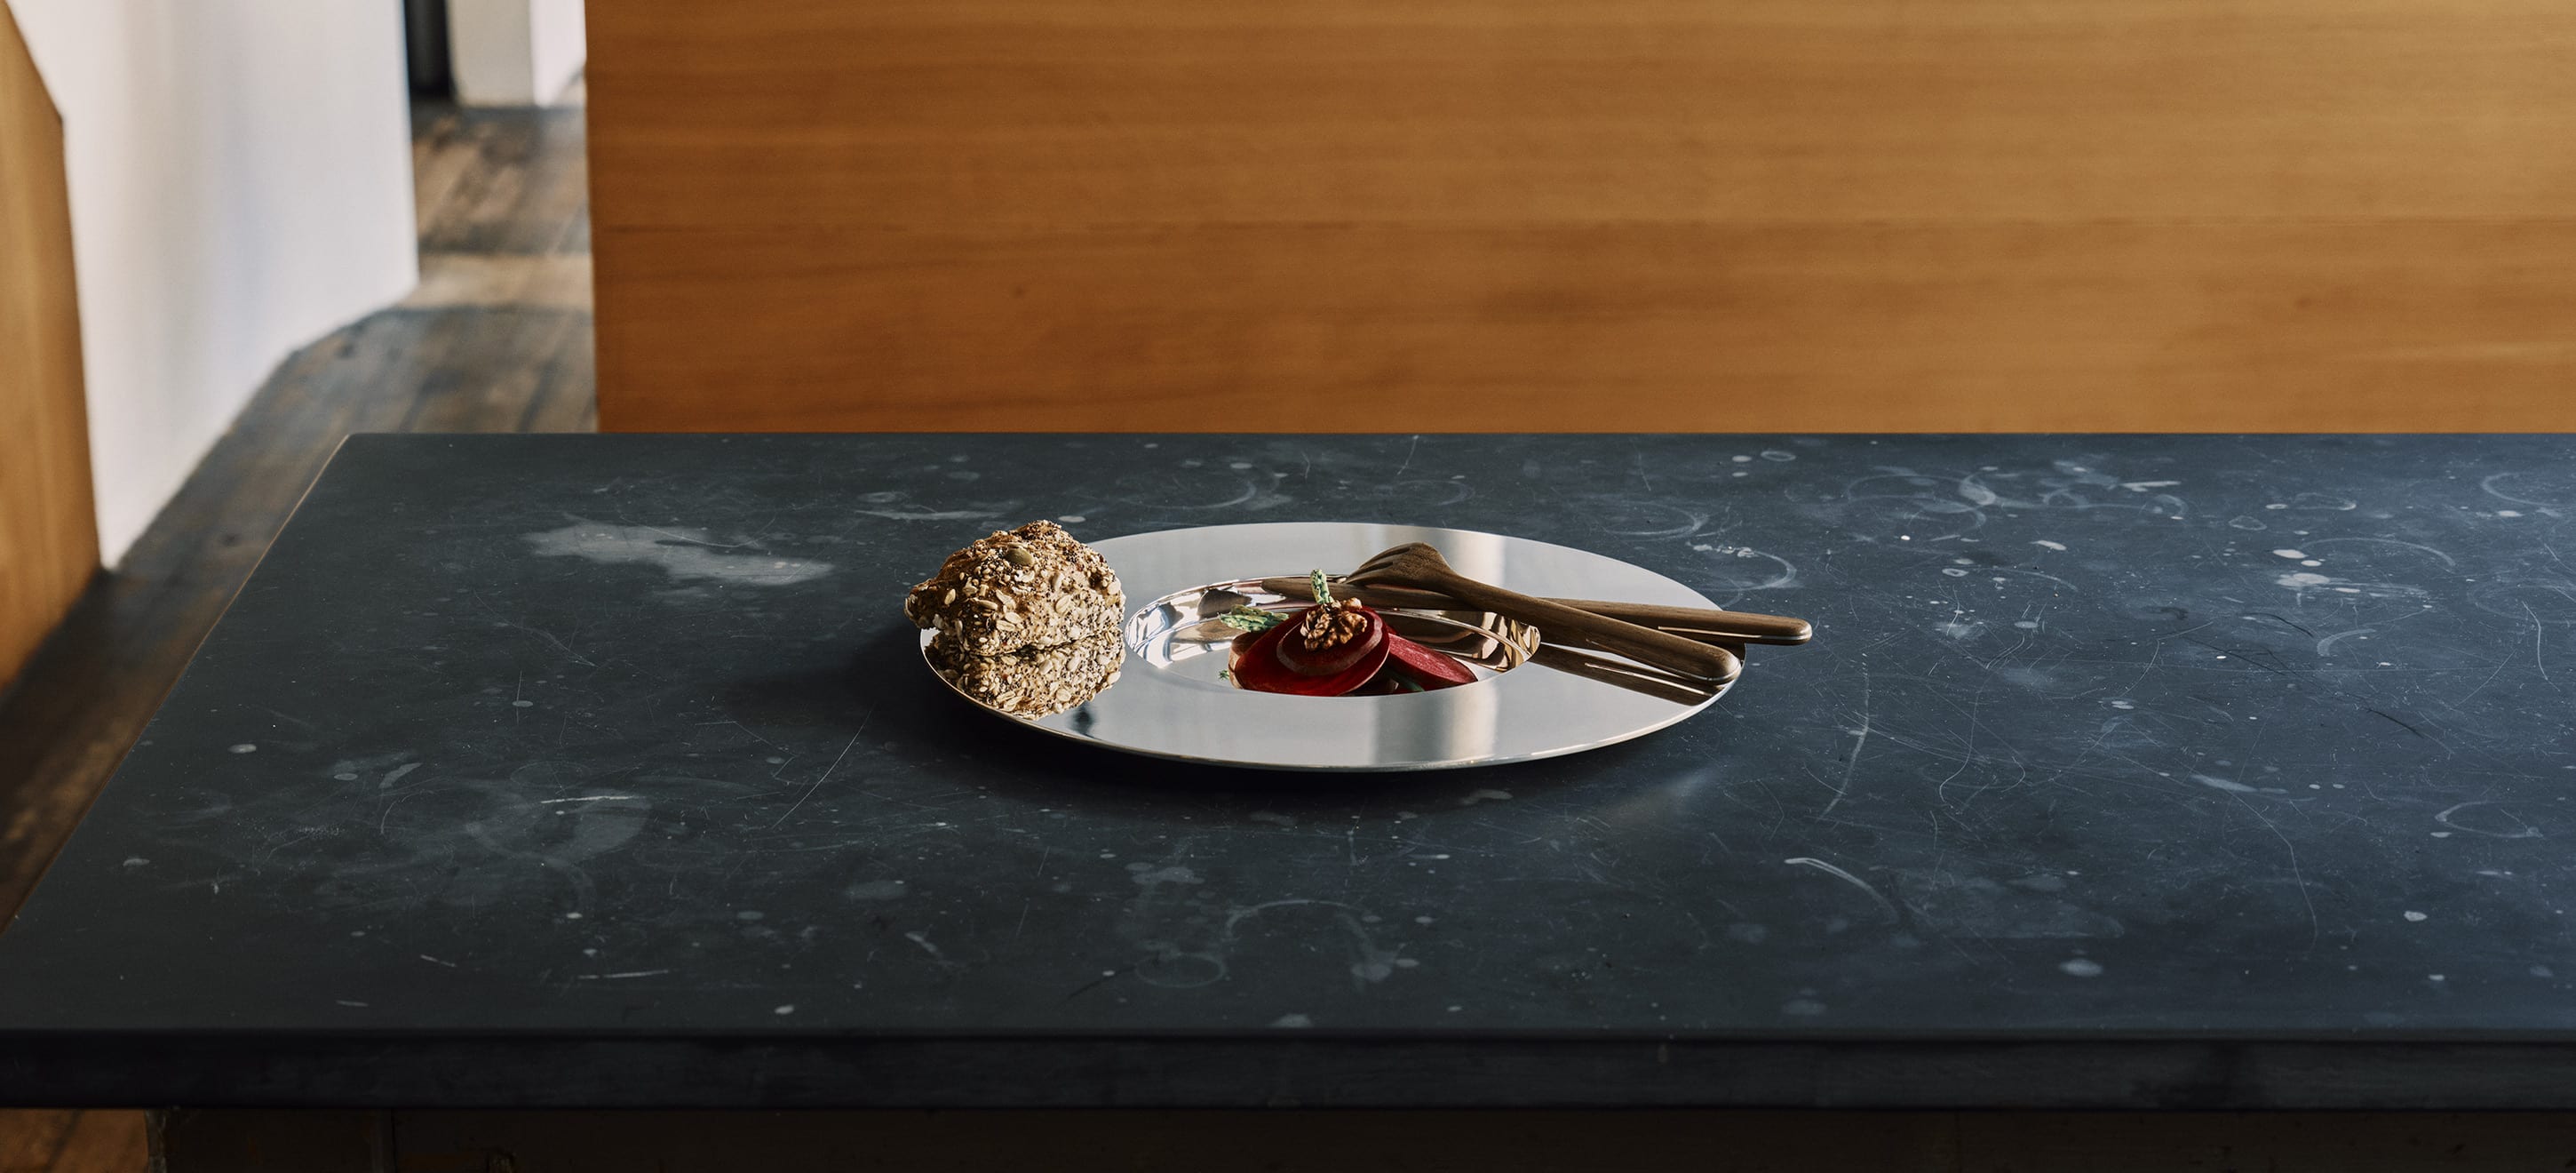 Trois pièces de la collection Dinner Service par Donald Judd posés sur une table en bois